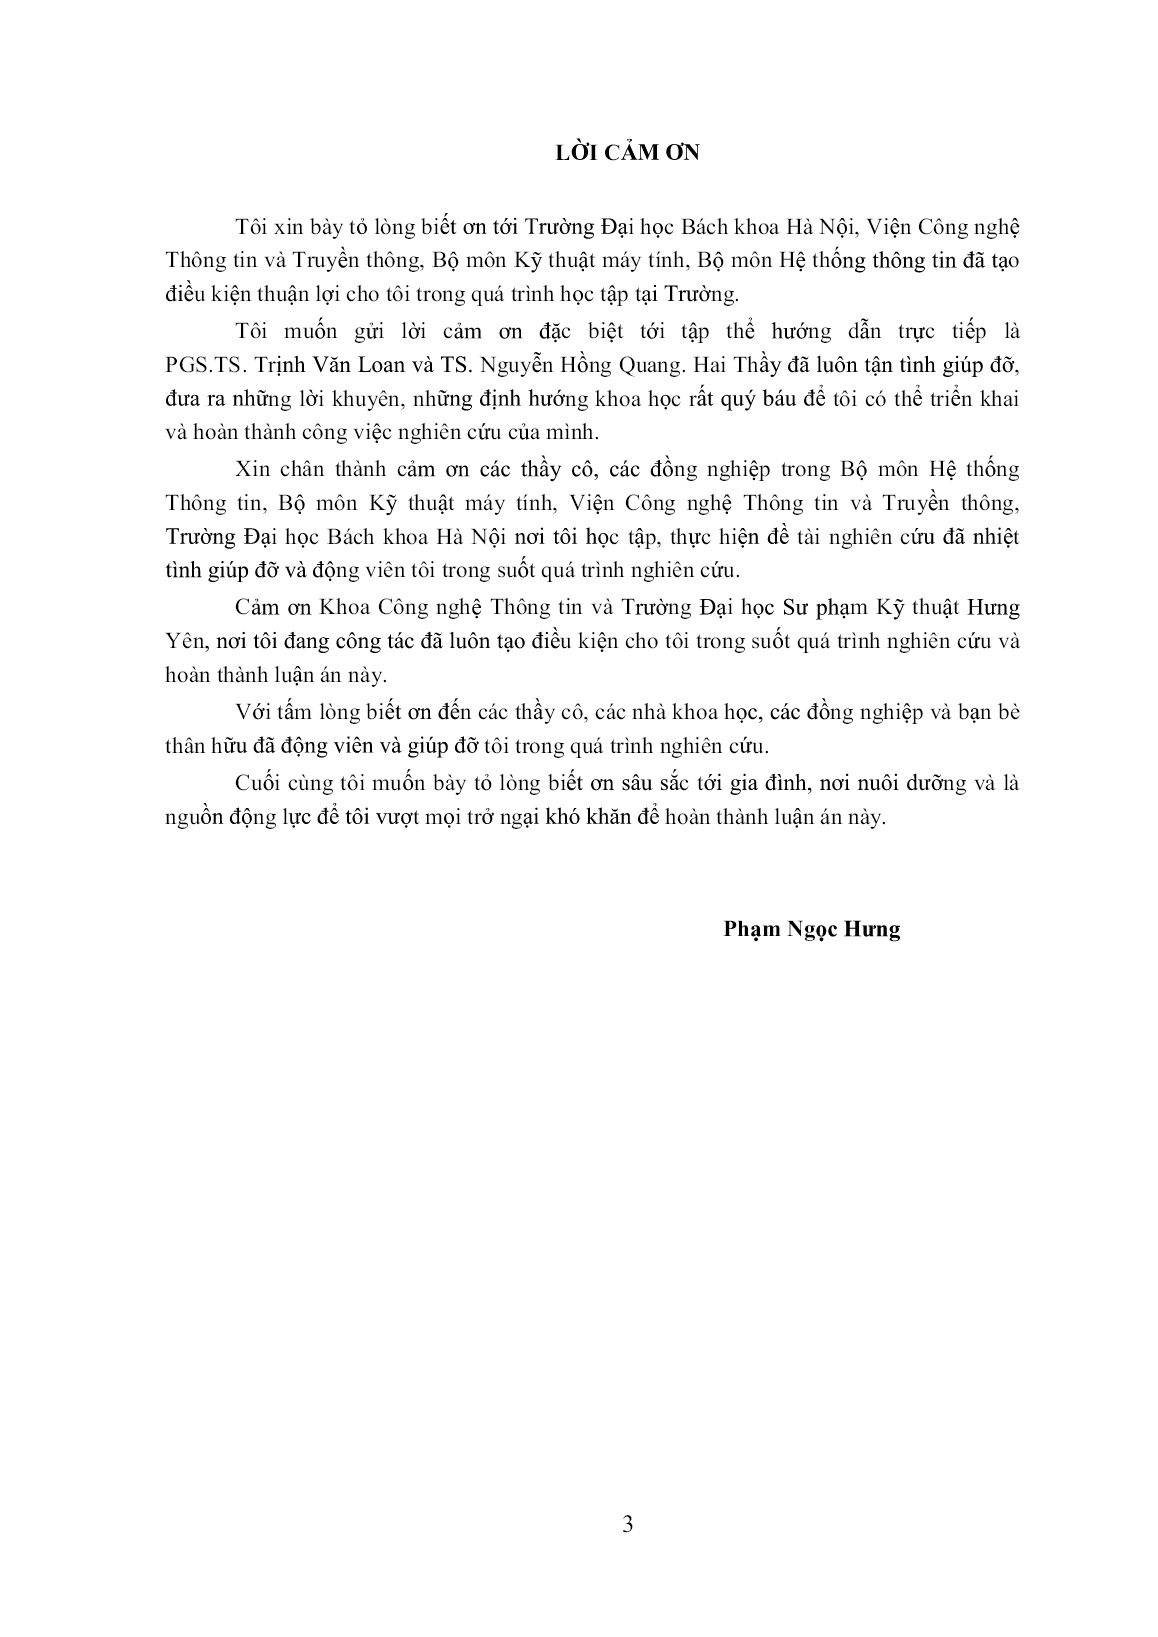 Luận án Nhận dạng tự động tiếng nói phát âm liên tục cho các phương ngữ chính của tiếng Việt theo phương thức phát âm trang 3